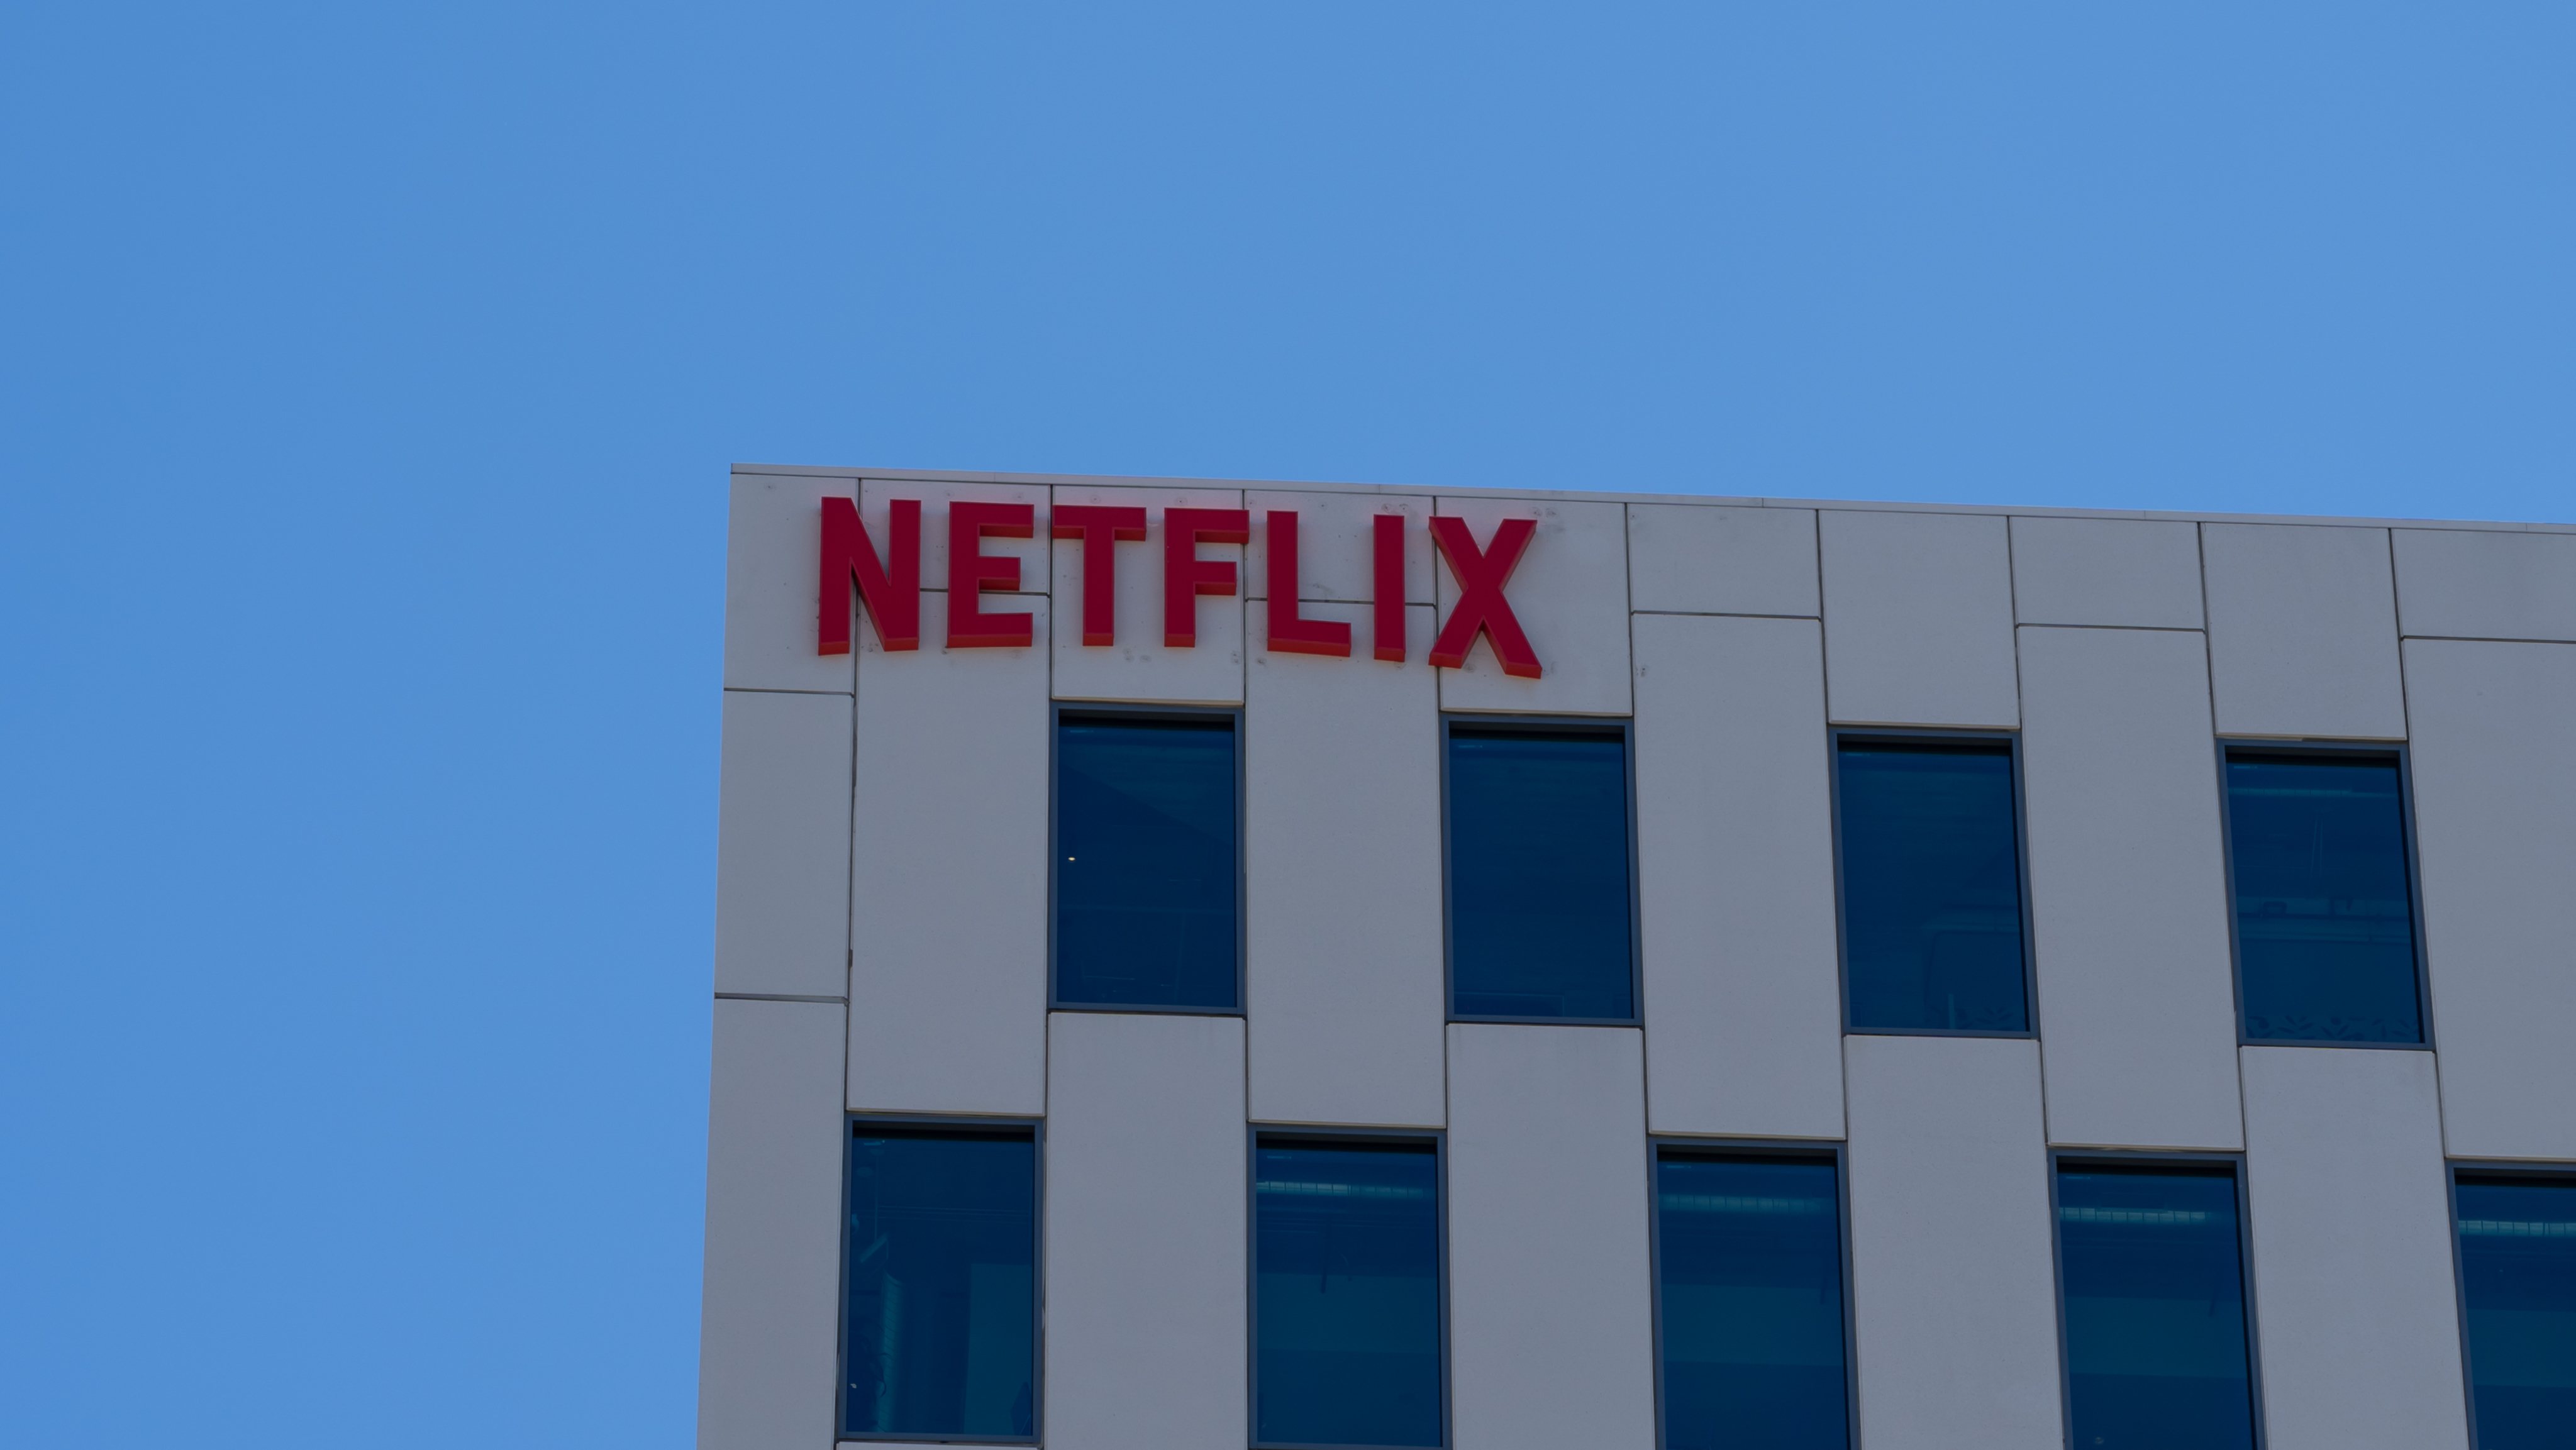 Netflix contrata comissário de bordo por R$ 2 mi ao ano - Forbes